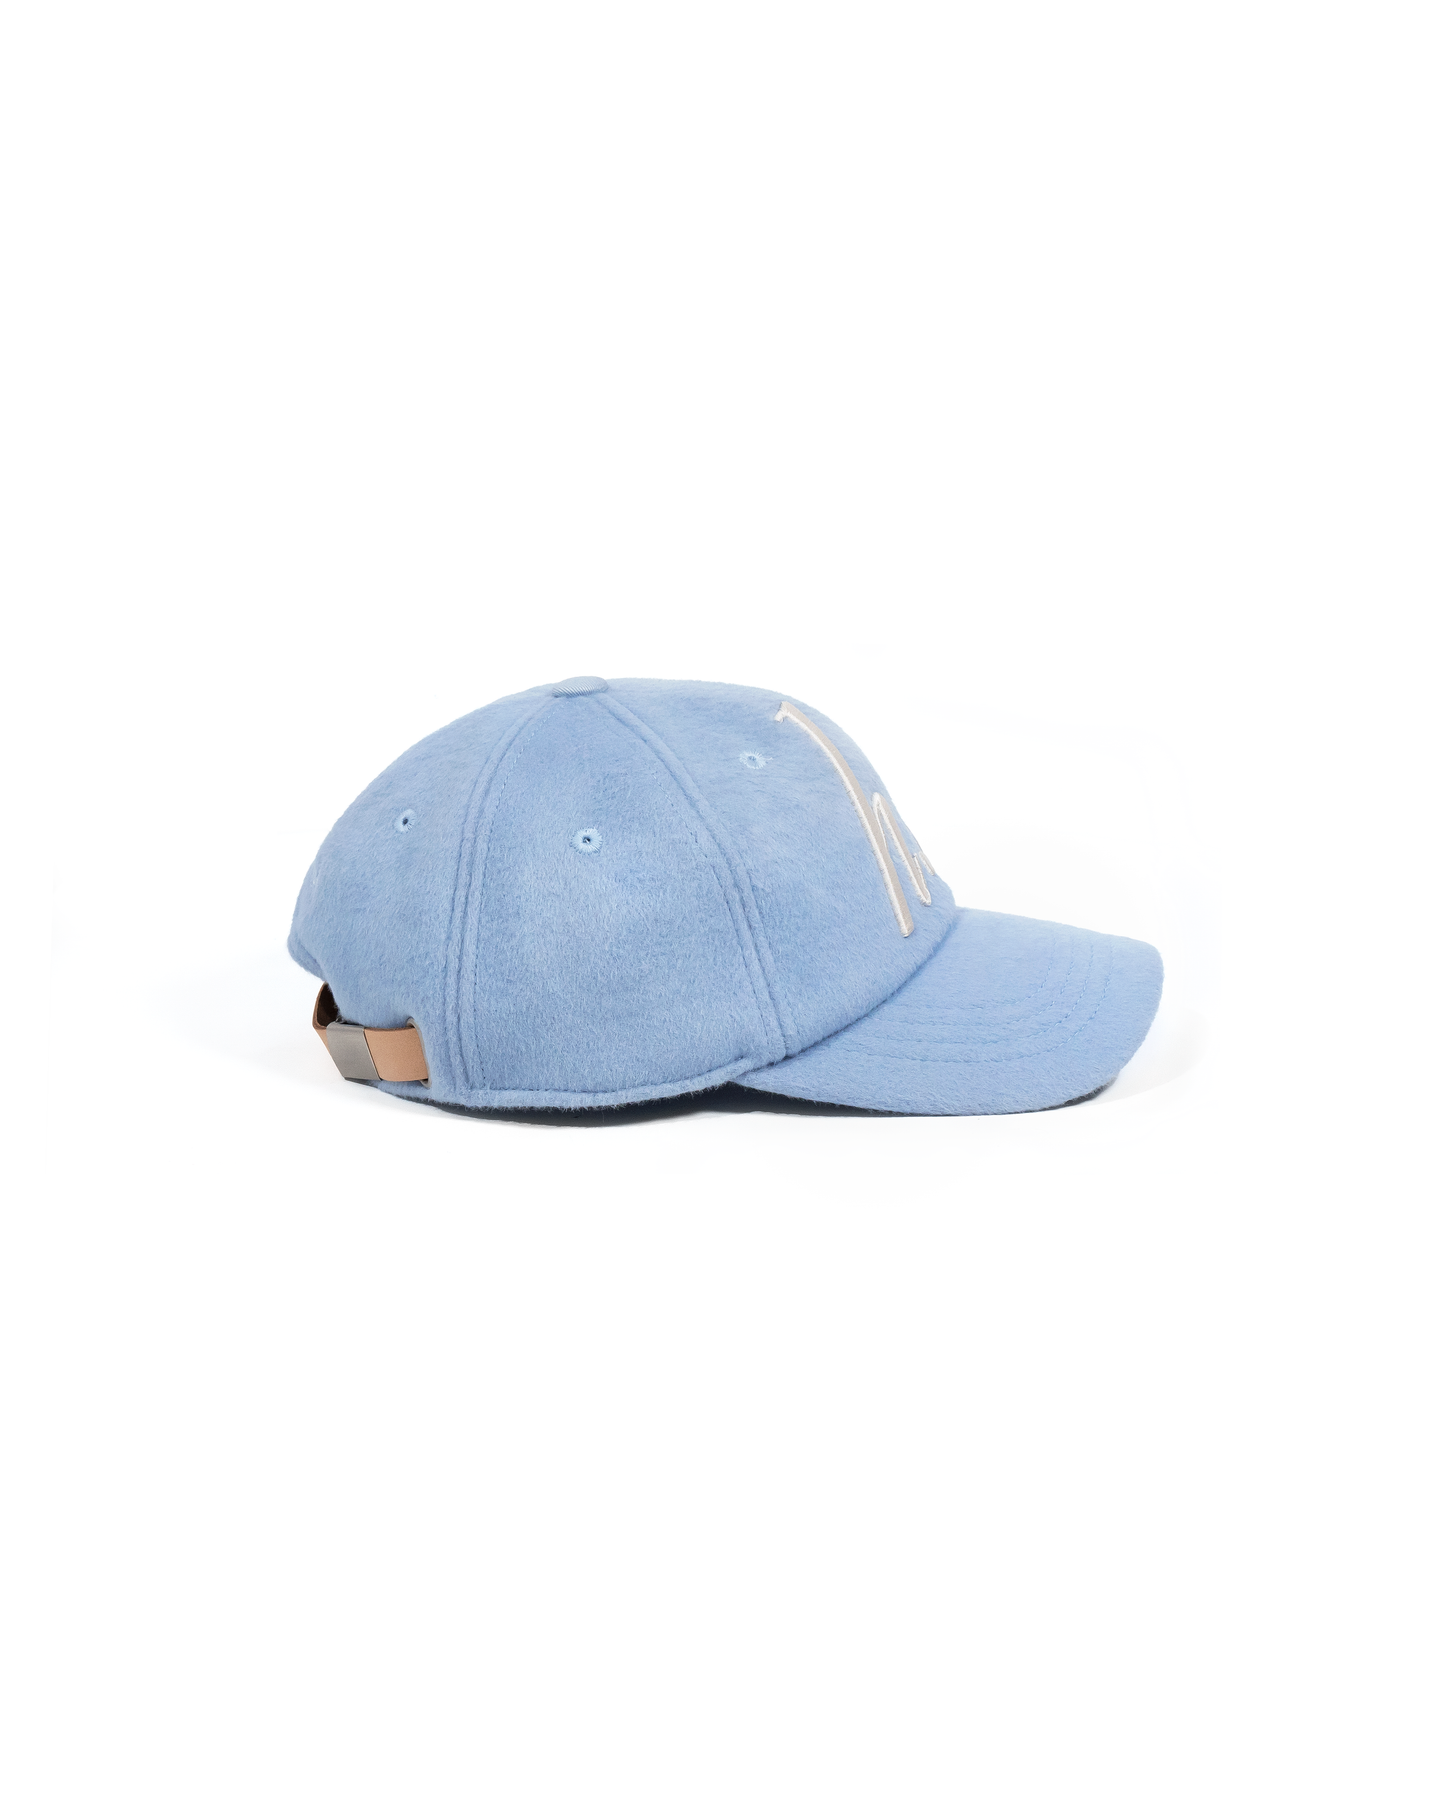 H.C HAT [BLUE]